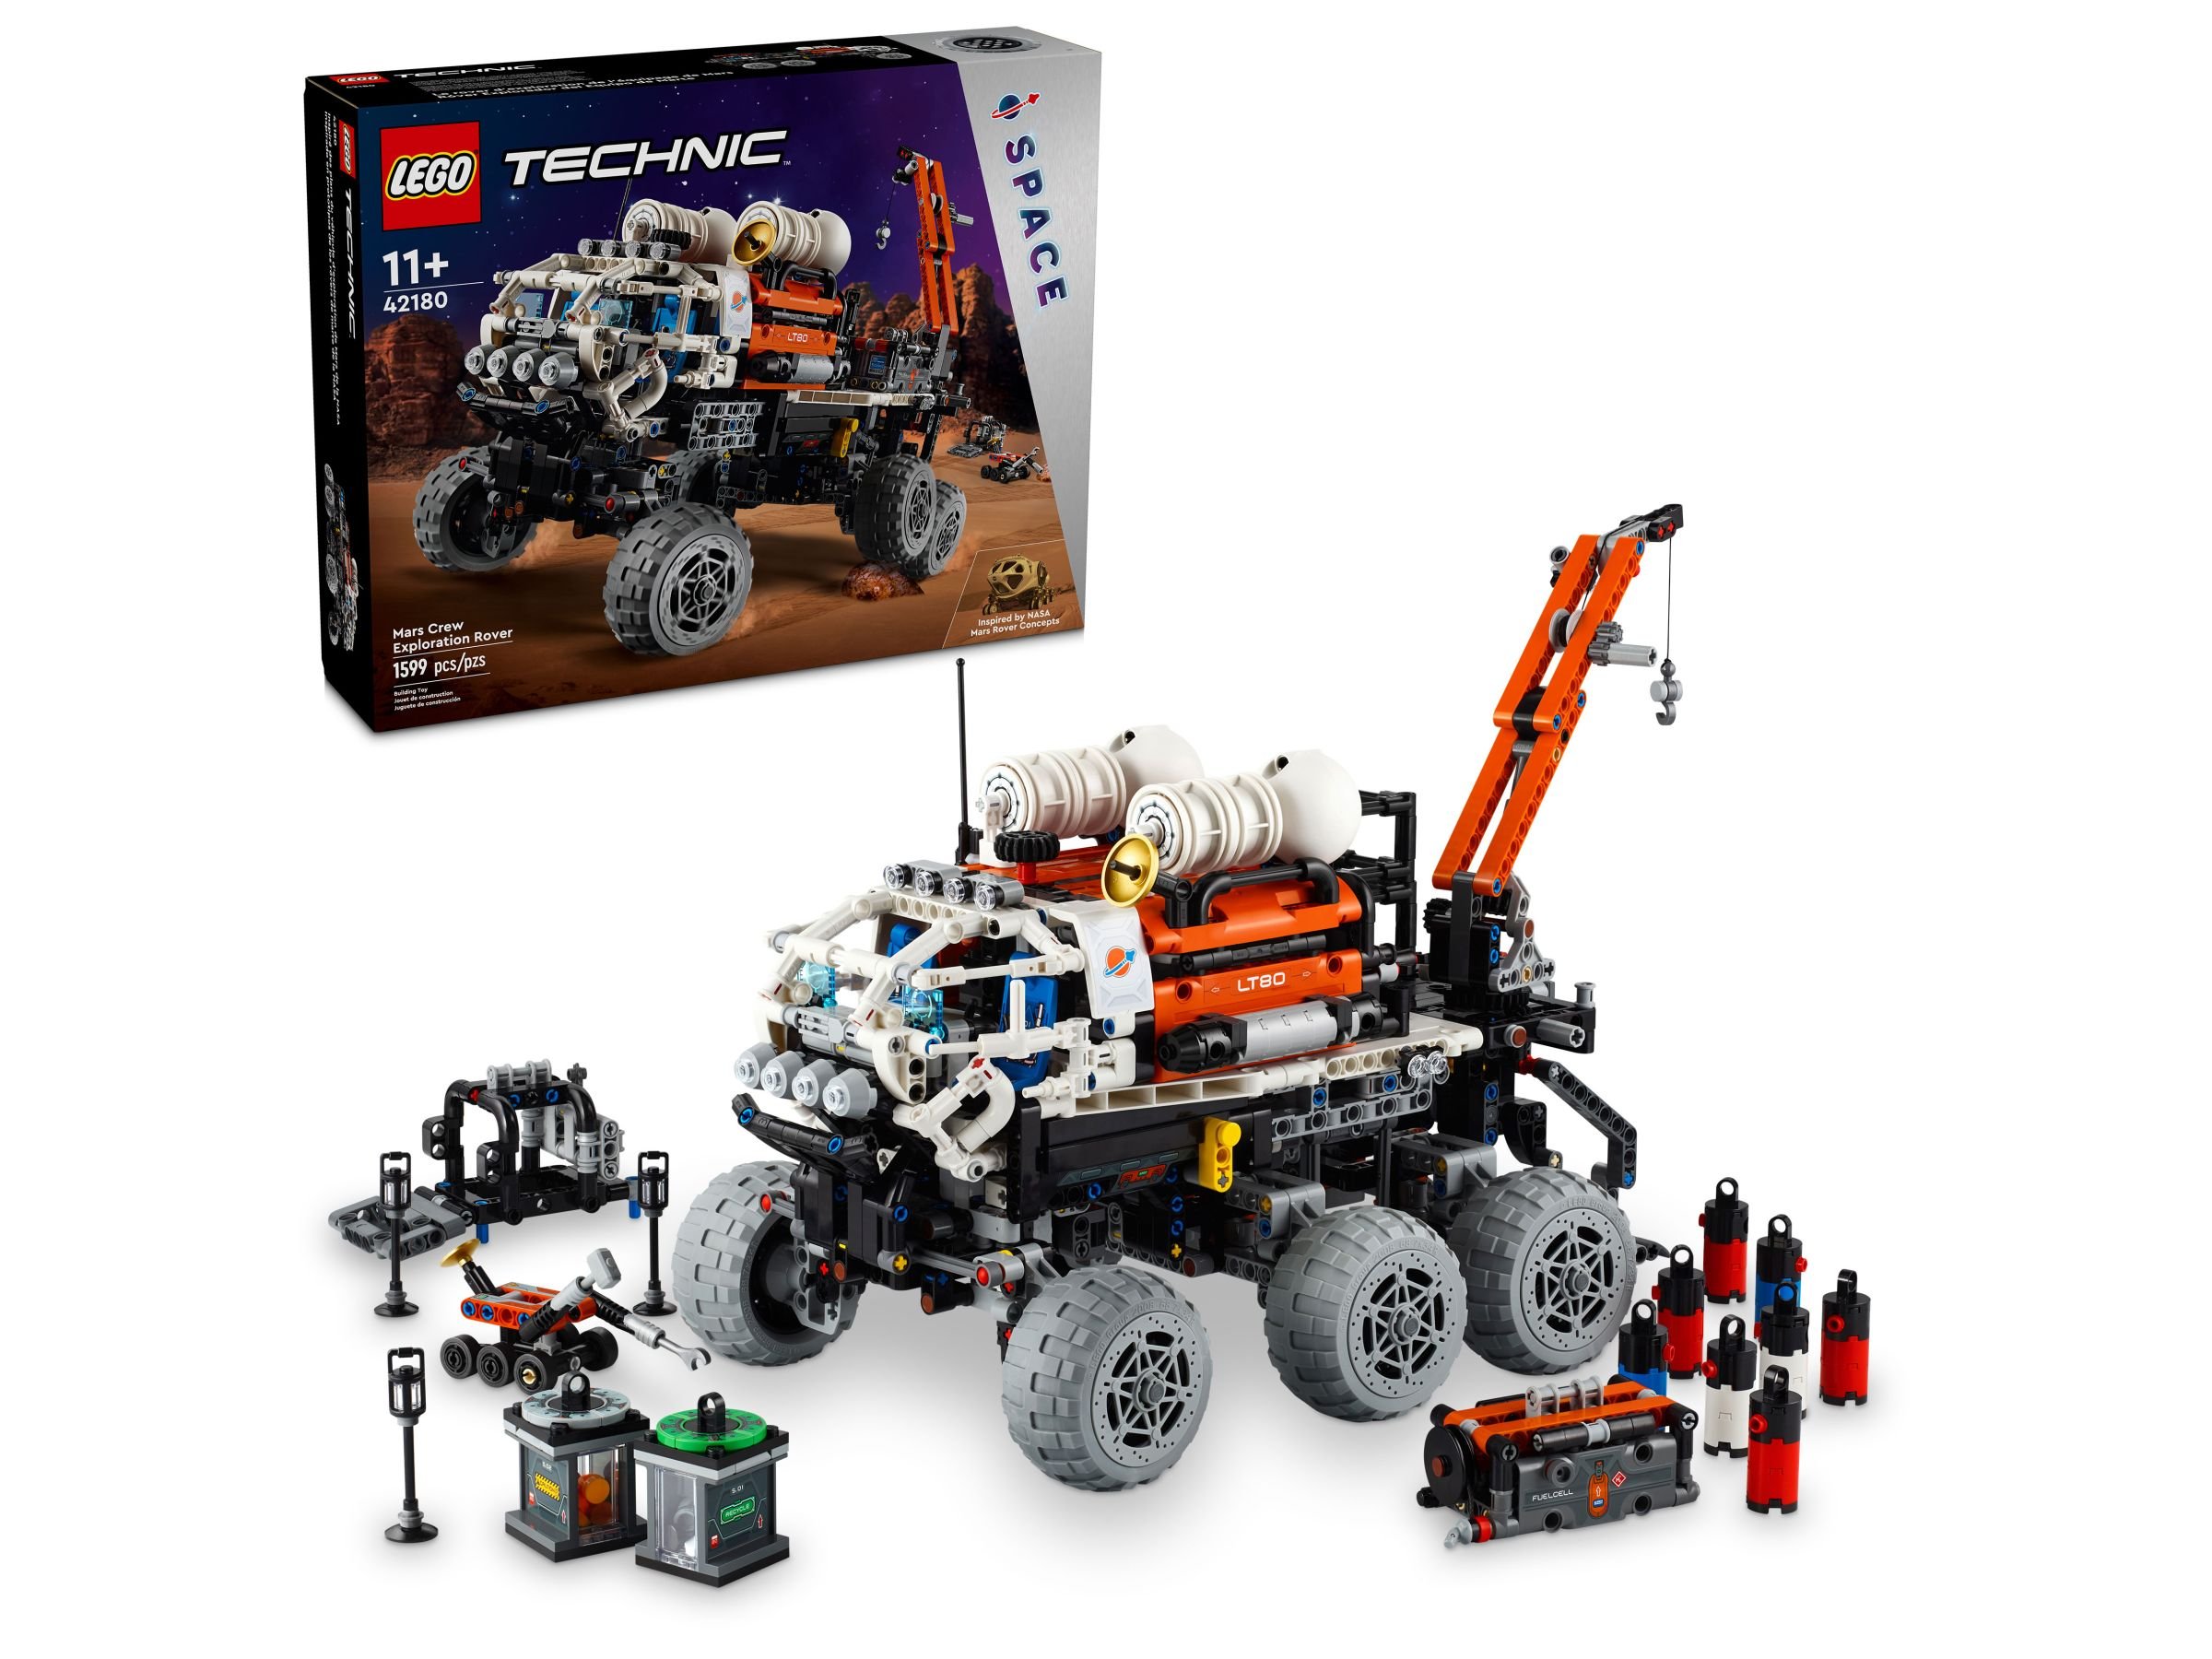 LEGO Technic 42180 Mars Exploration Rover LEGO_42180_boxprod_v39.jpg